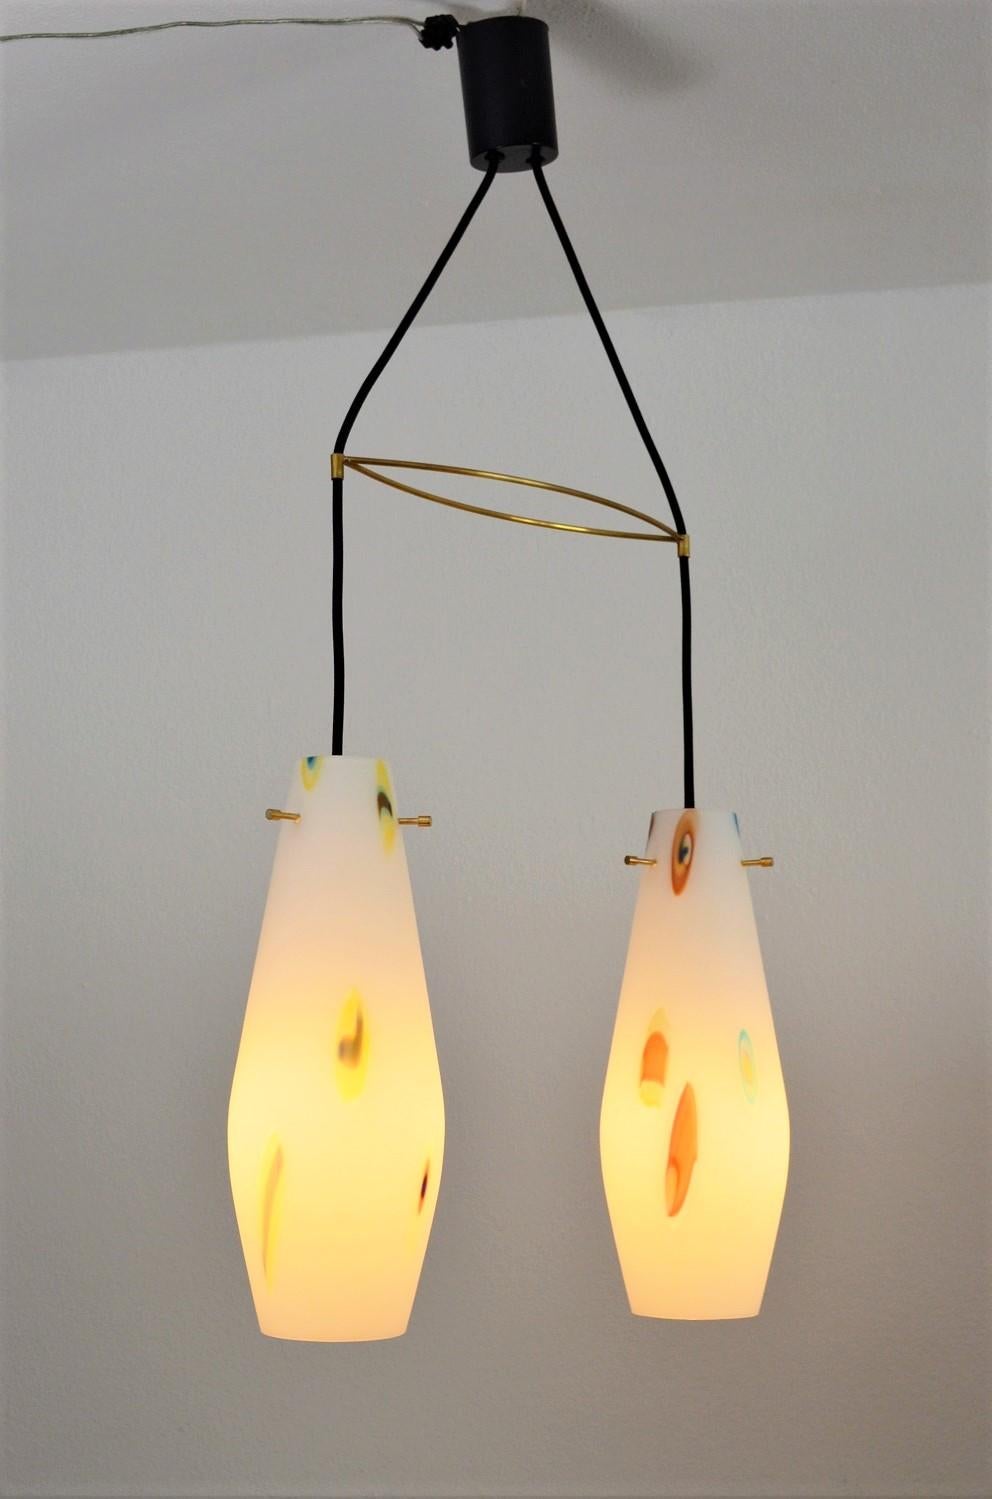 Superbe lampe suspendue avec deux verres.
Fabriqué en Italie par Stilnovo dans les années 1970.
À l'intérieur des verres laiteux sont fondus des éléments de verre 